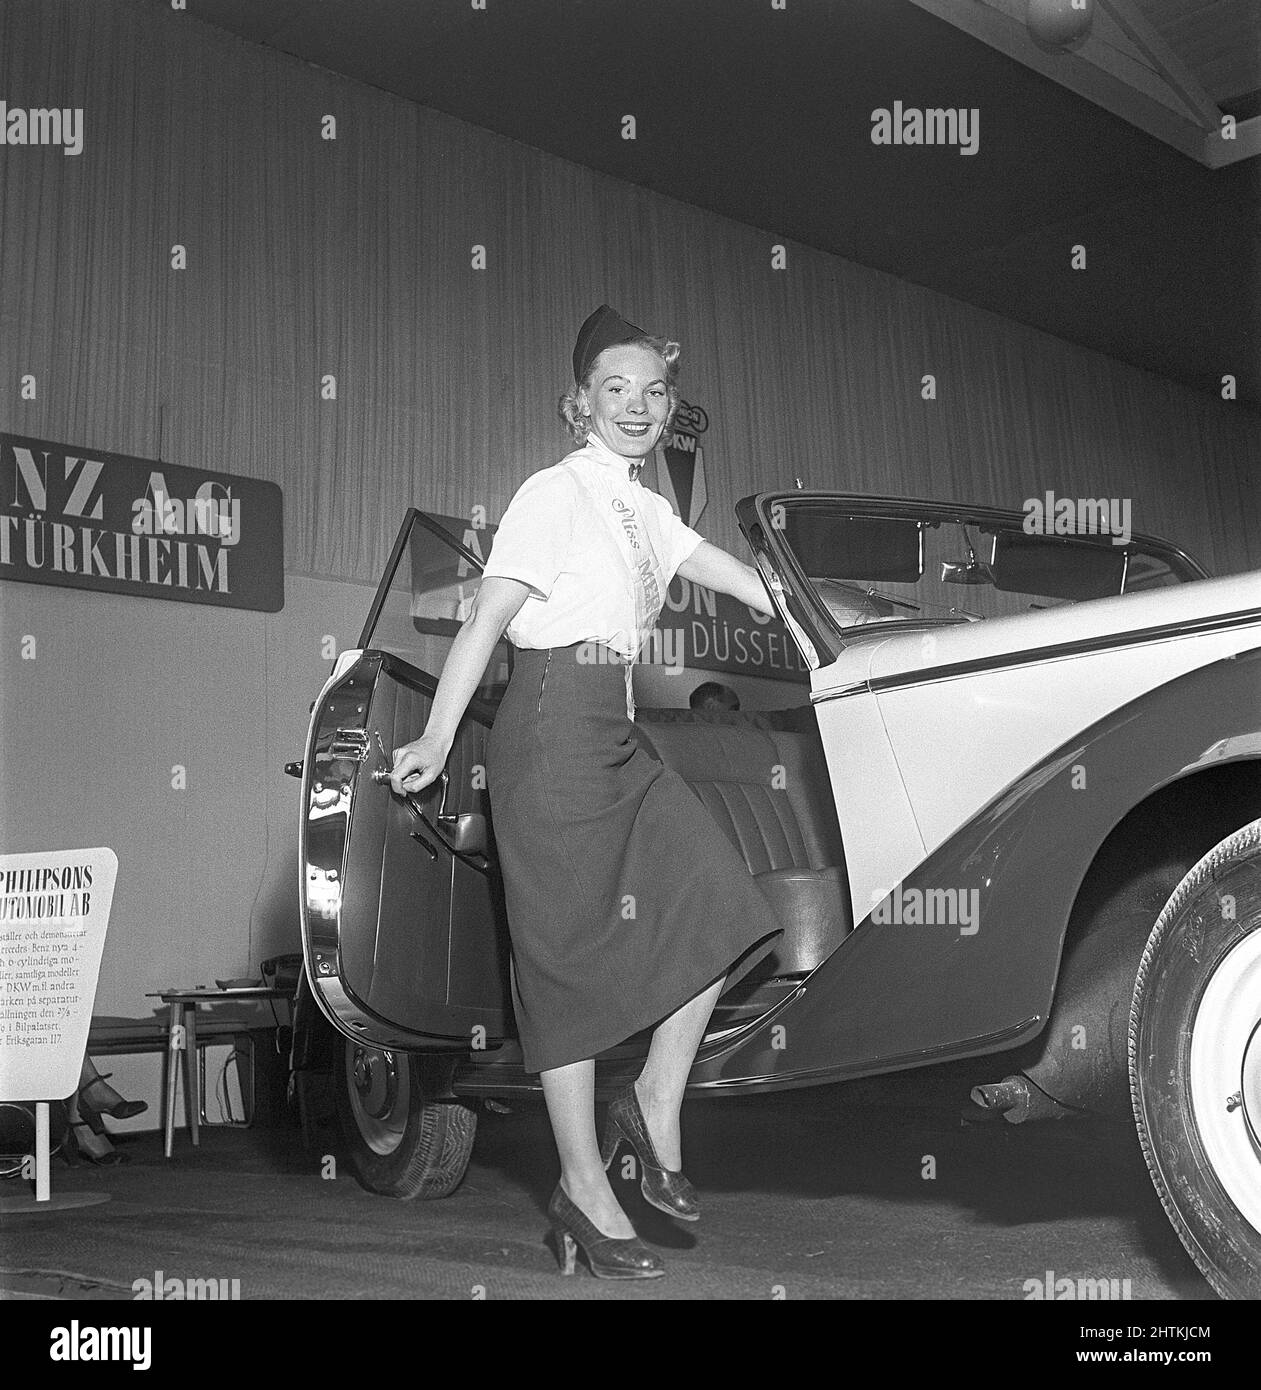 In der 1950s. Eine junge Frau, die im Mercedes-Bereich einer Messe arbeitet, steht auf halbem Weg in einem Mercedes-Benz Modell 170 S, einem zweisitzigen Cabriolet. Schweden 1951 Kristoffersson Ref. BD38-5 Stockfoto